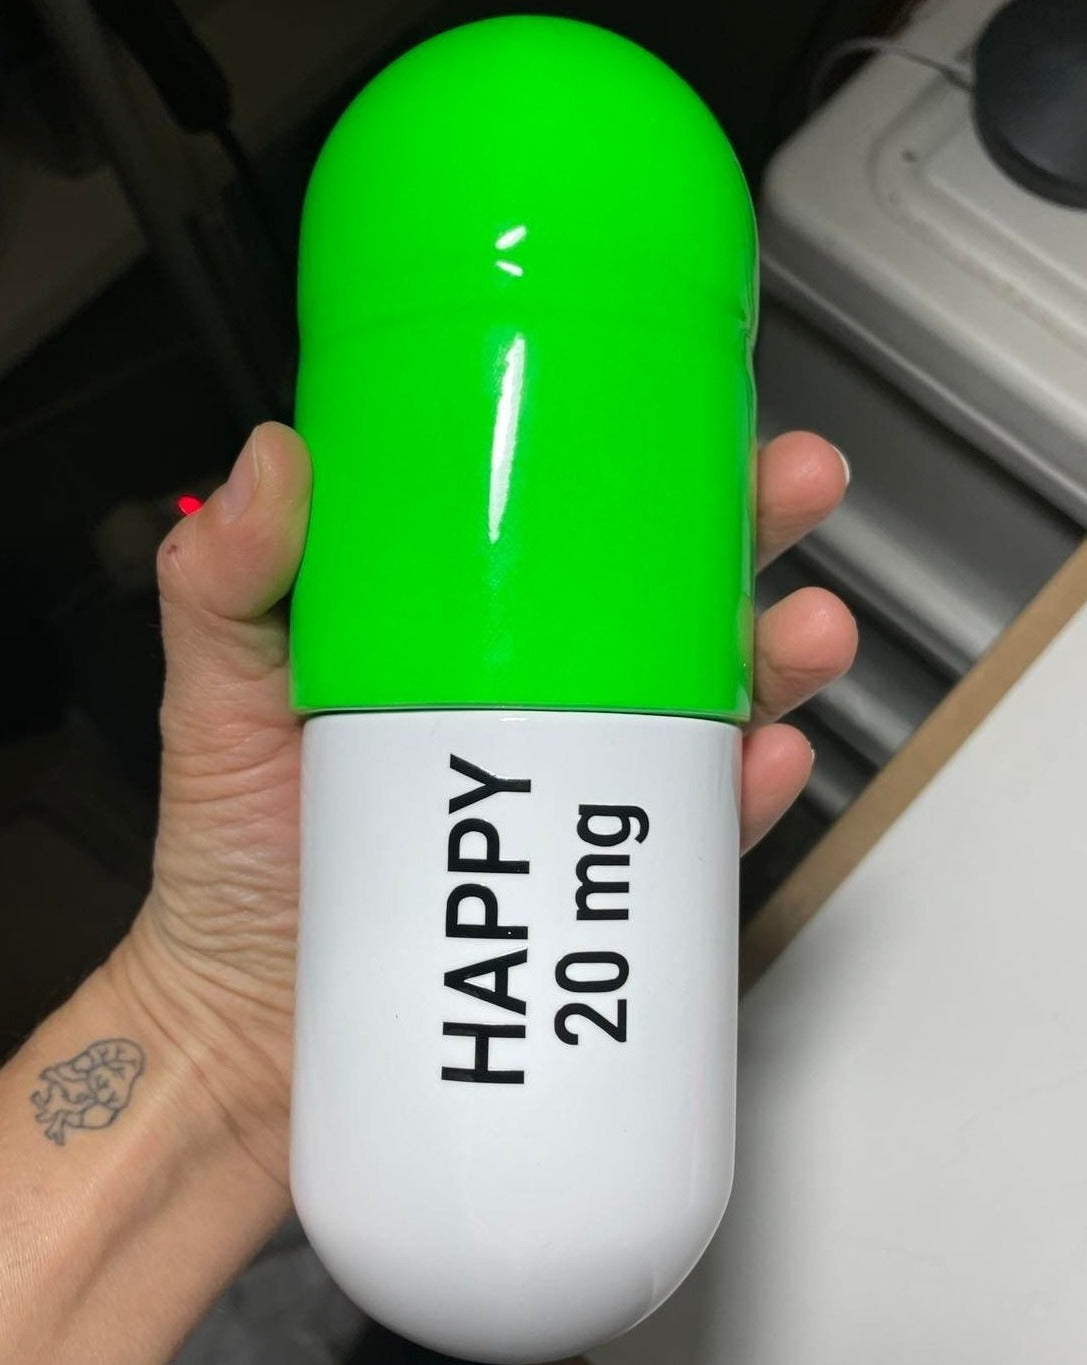 Ceramic Happy Pill - Fluorescent Green and White